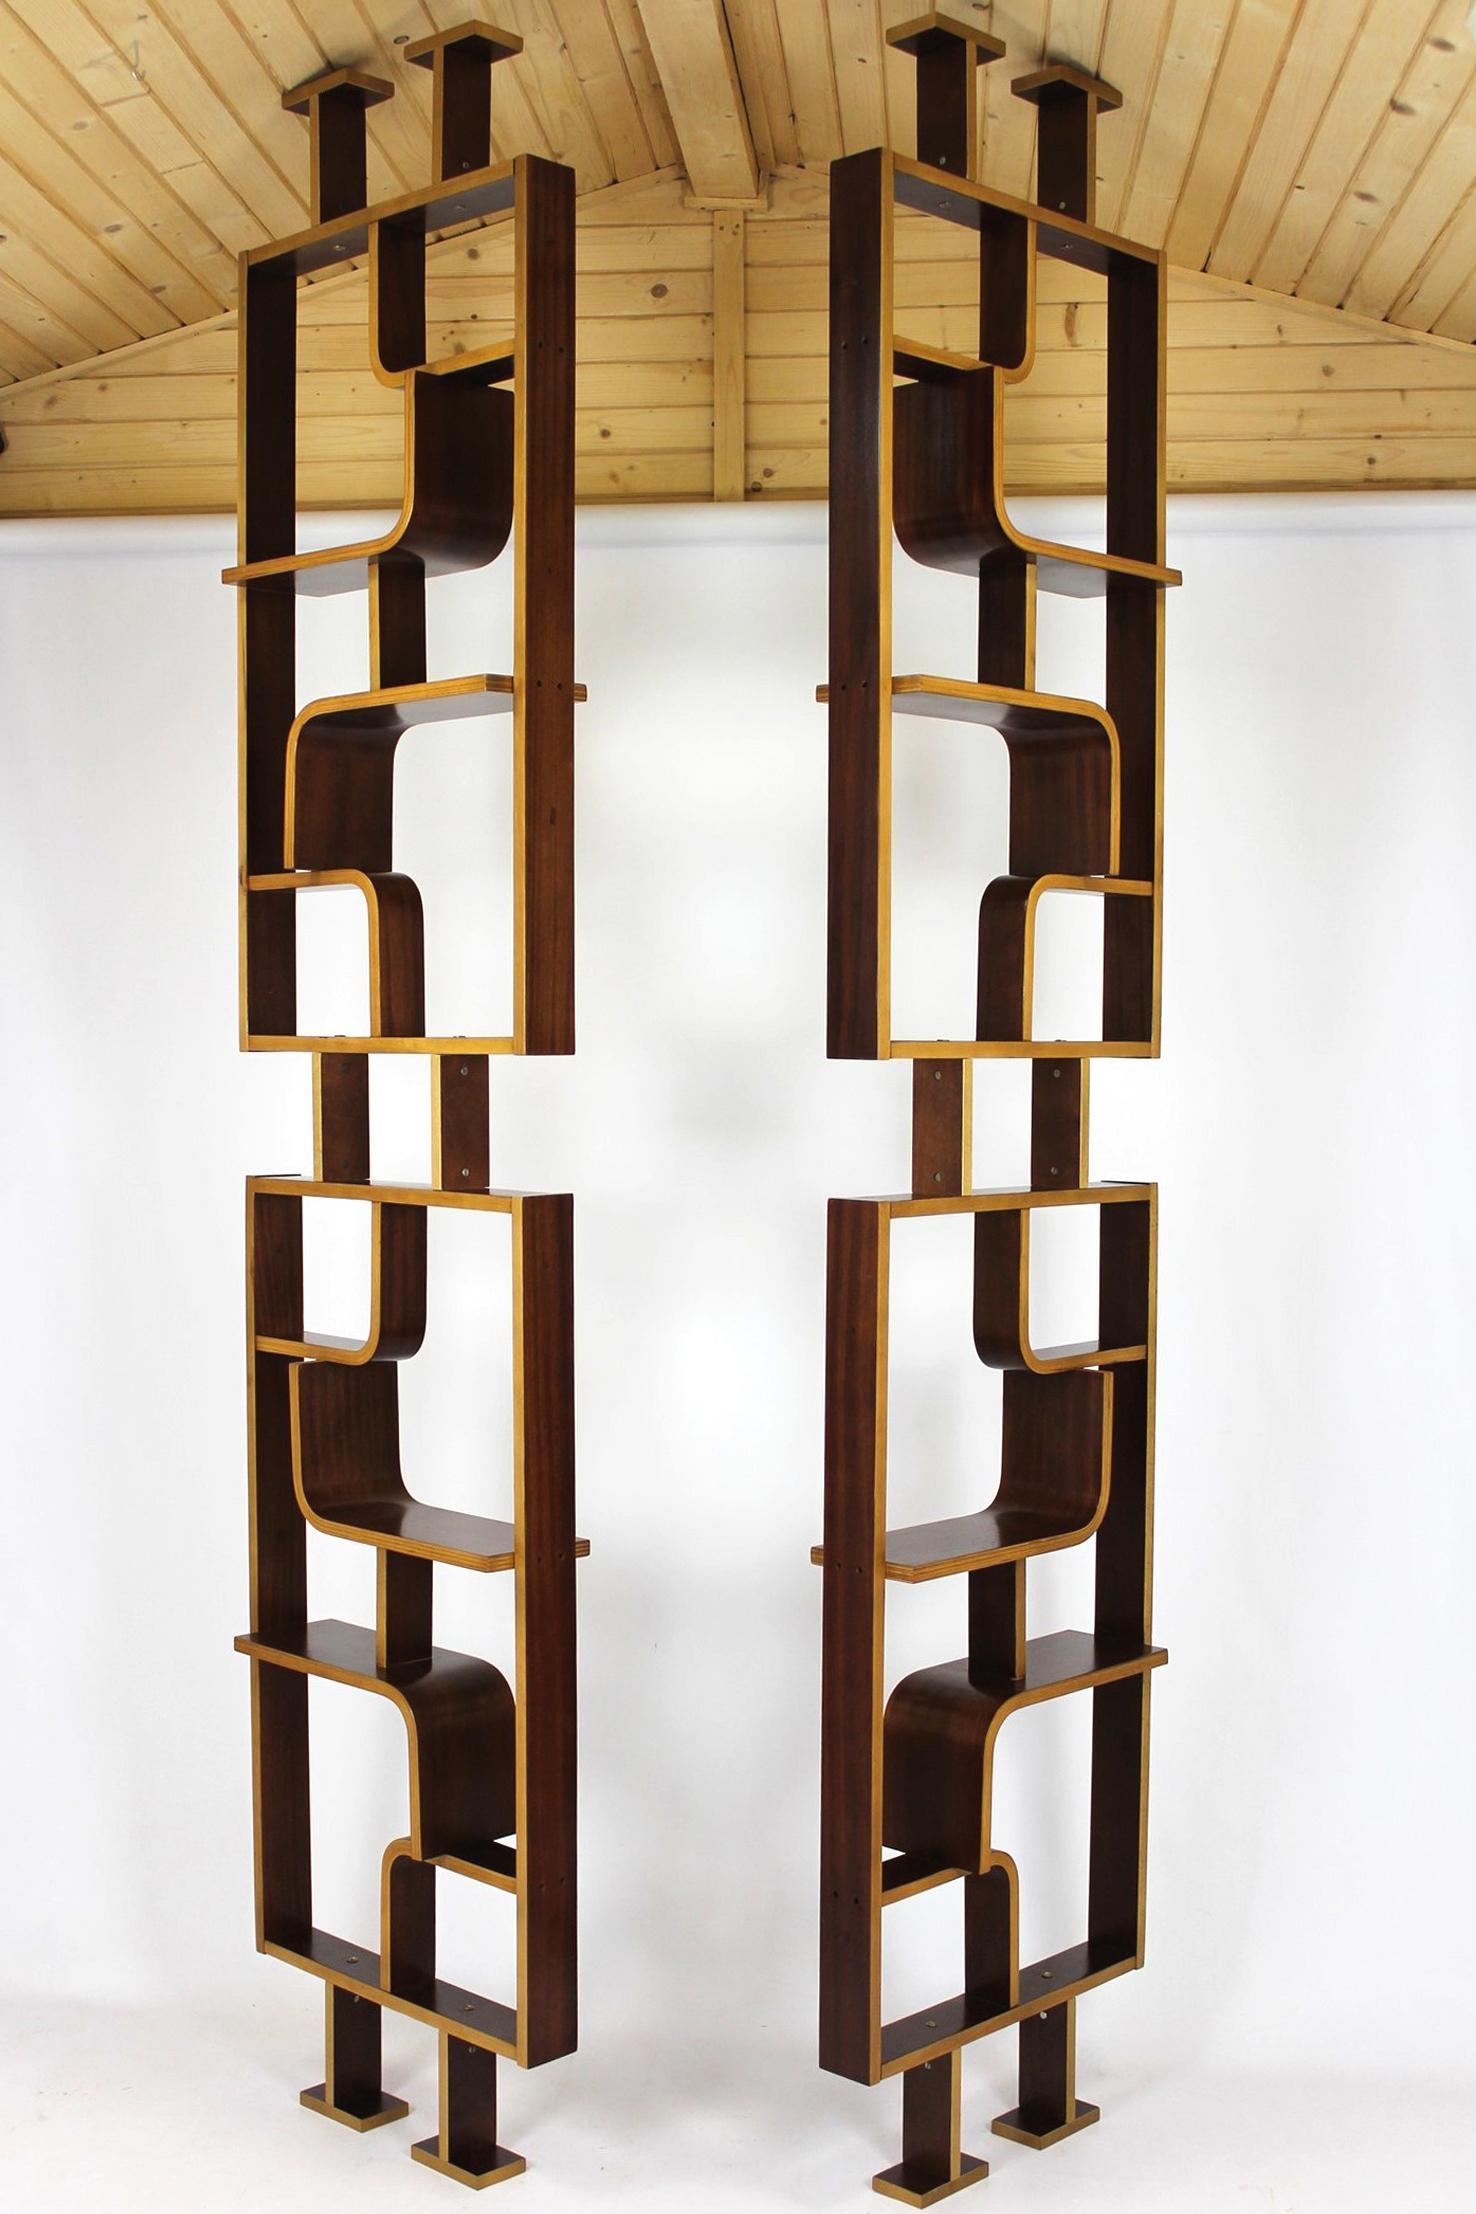 Dieser Raumteiler wurde in den 1960er Jahren von Ludvik Volák für Dřevopodnik Holešov entworfen.
Hergestellt aus gebogenem, furniertem Sperrholz. Diese Raumteiler wurden vollständig restauriert und satiniert.
Auf Wunsch können wir neue Beine in